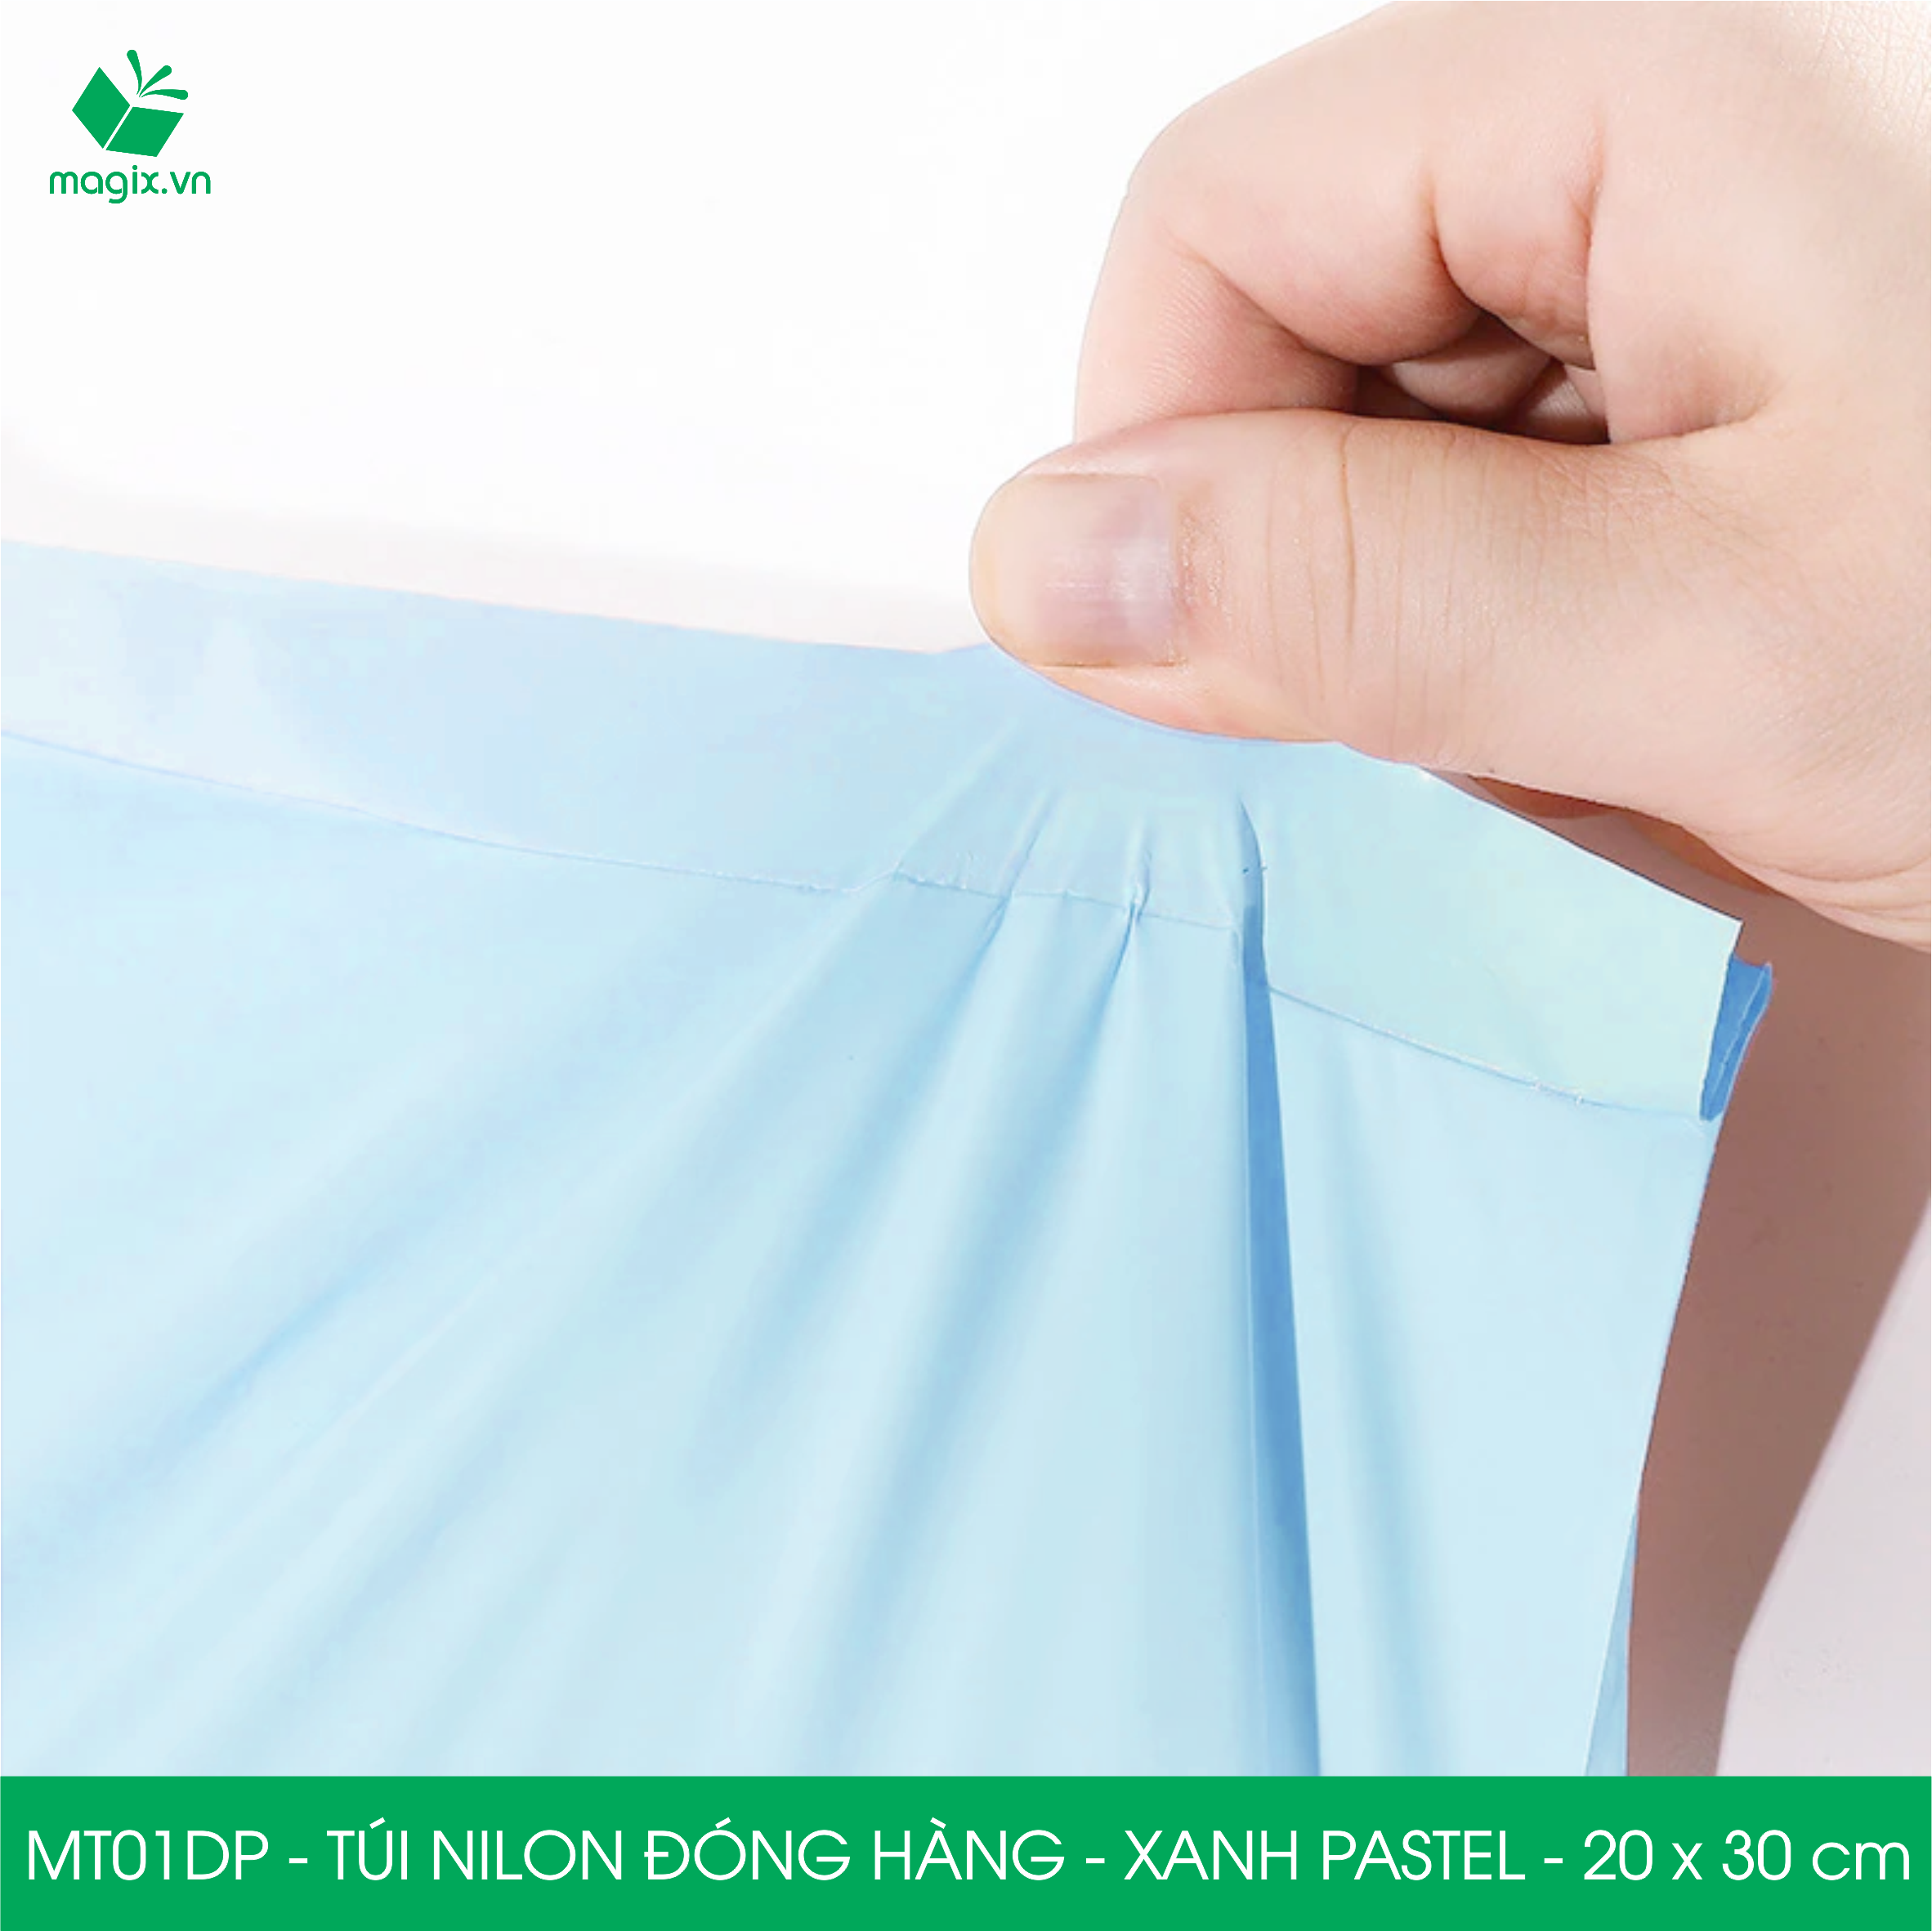 MT01DP - 20x30 cm - Túi nilon gói hàng - 200 túi niêm phong đóng hàng màu xanh pastel